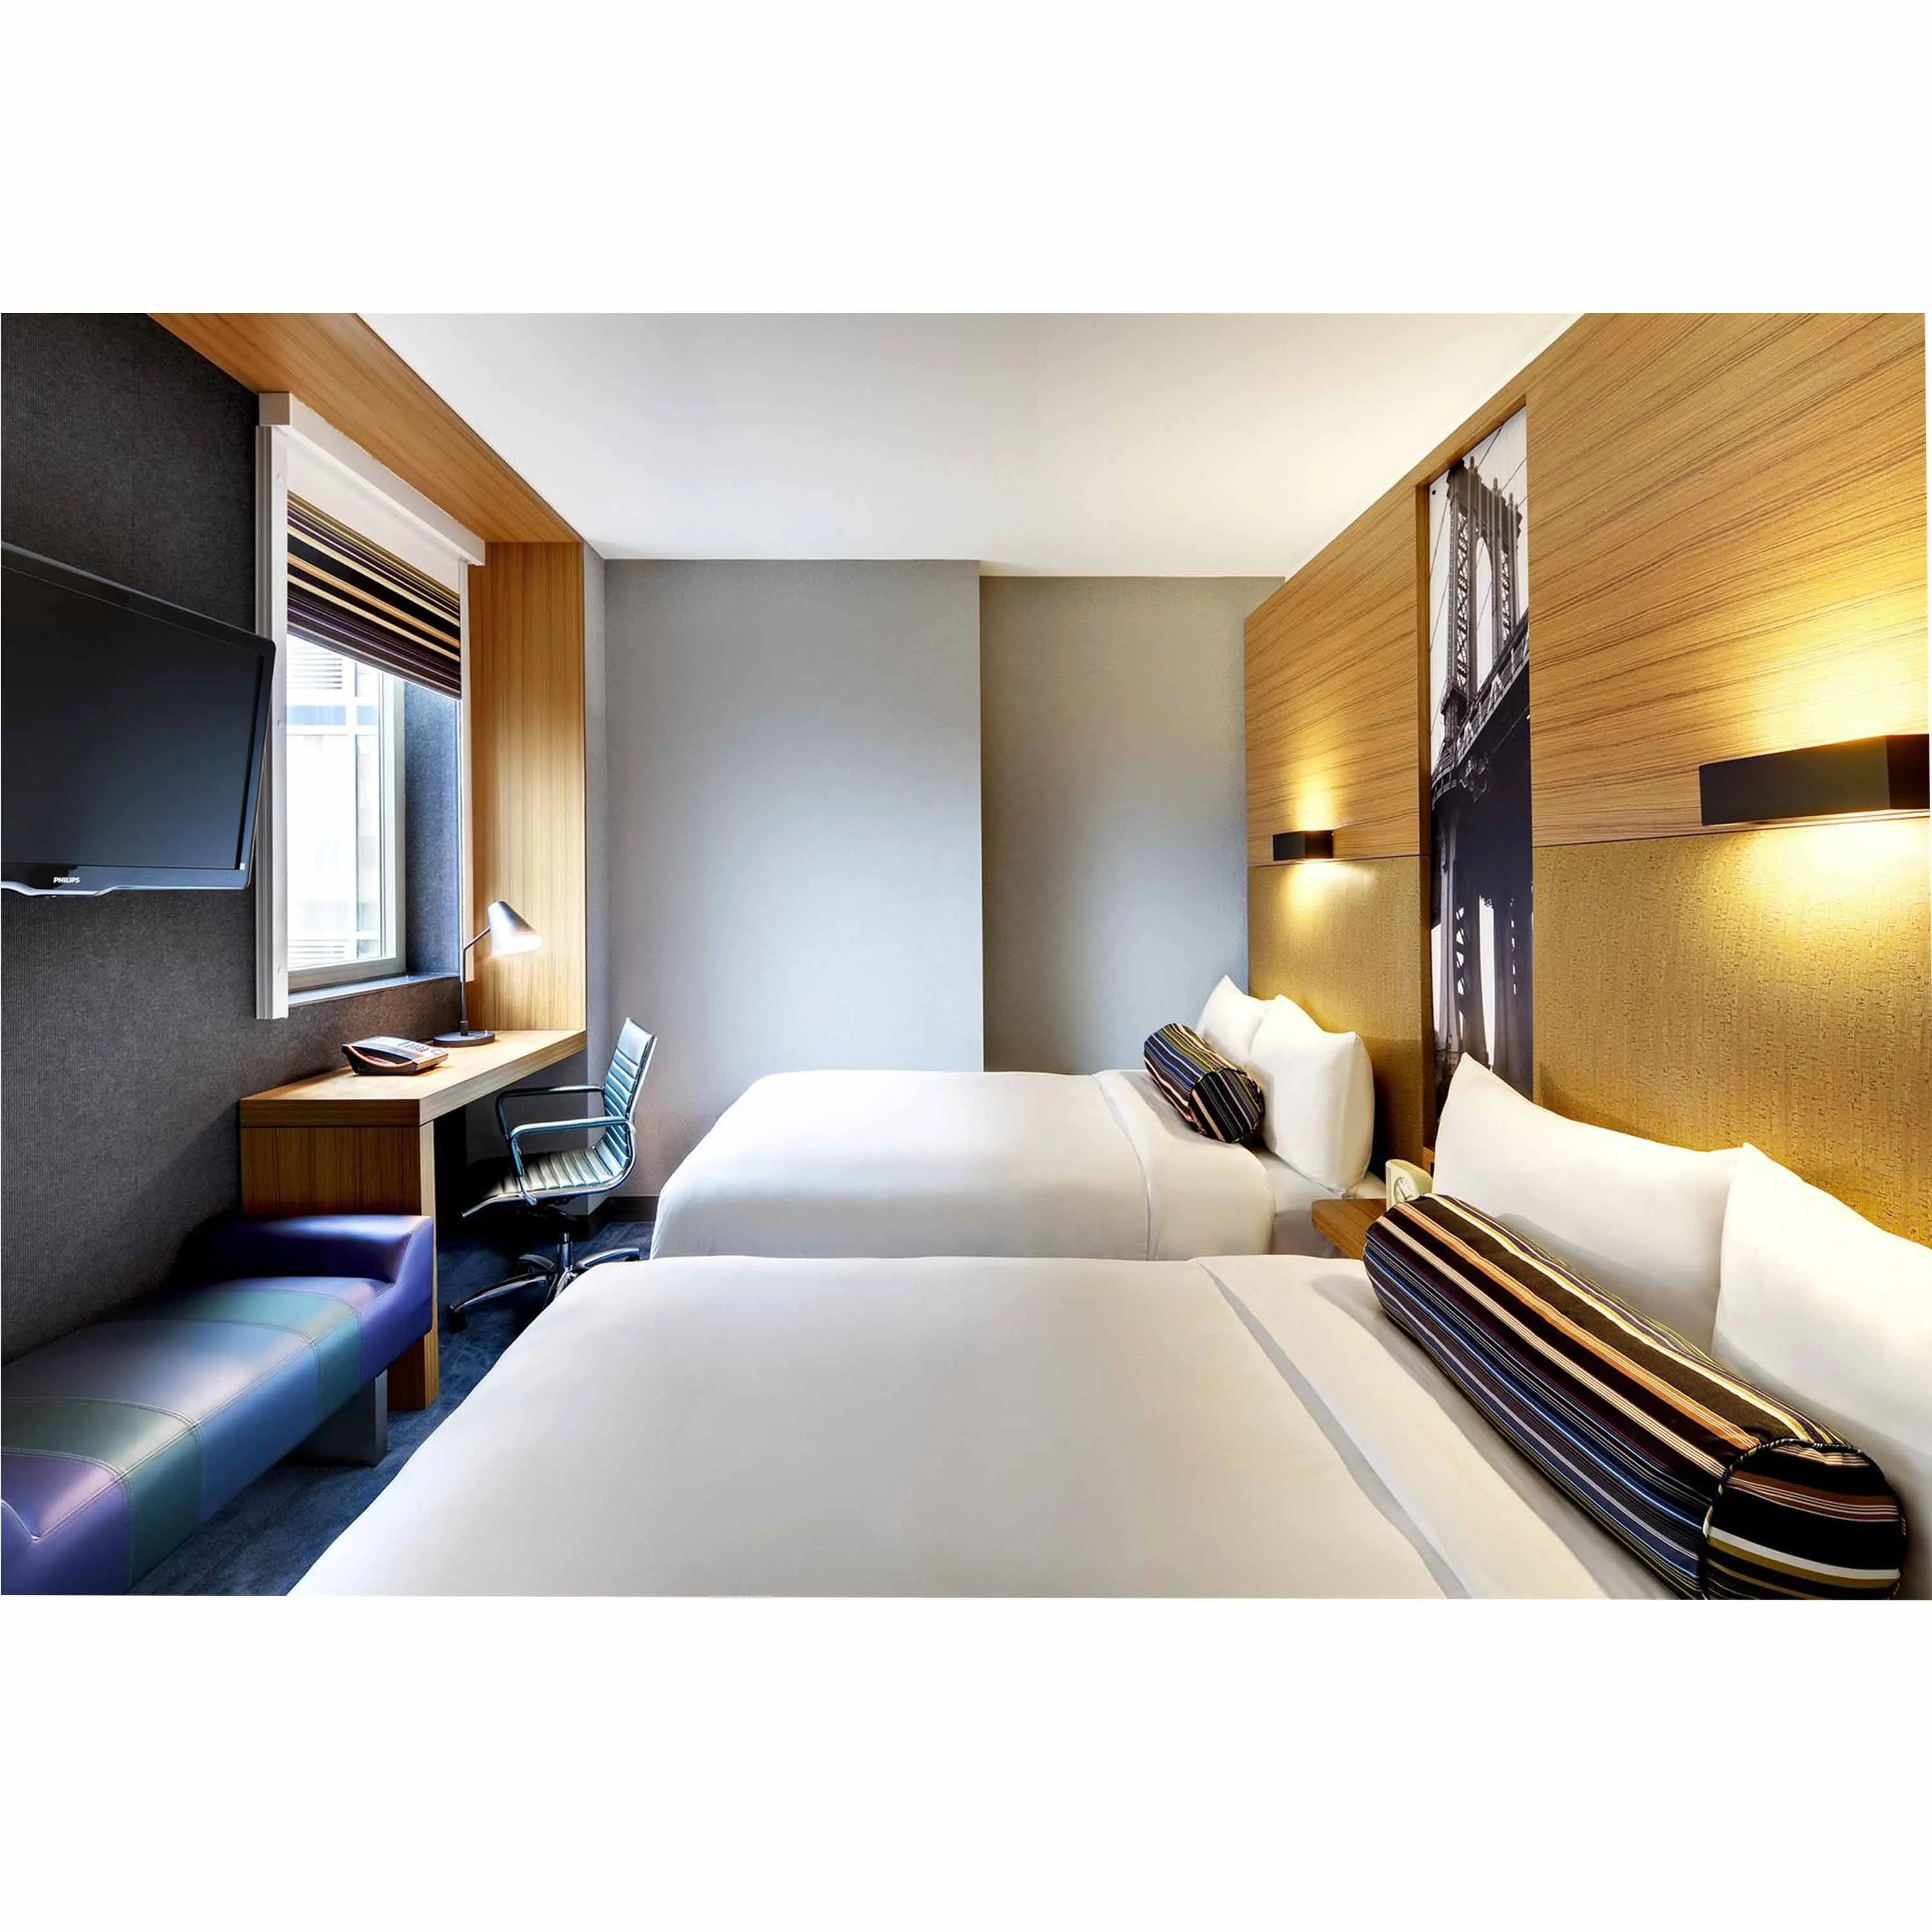 Мебель для спальни для отеля, Aloft, гостиничная мебель для спальни hpl для США, Канады, Австралии